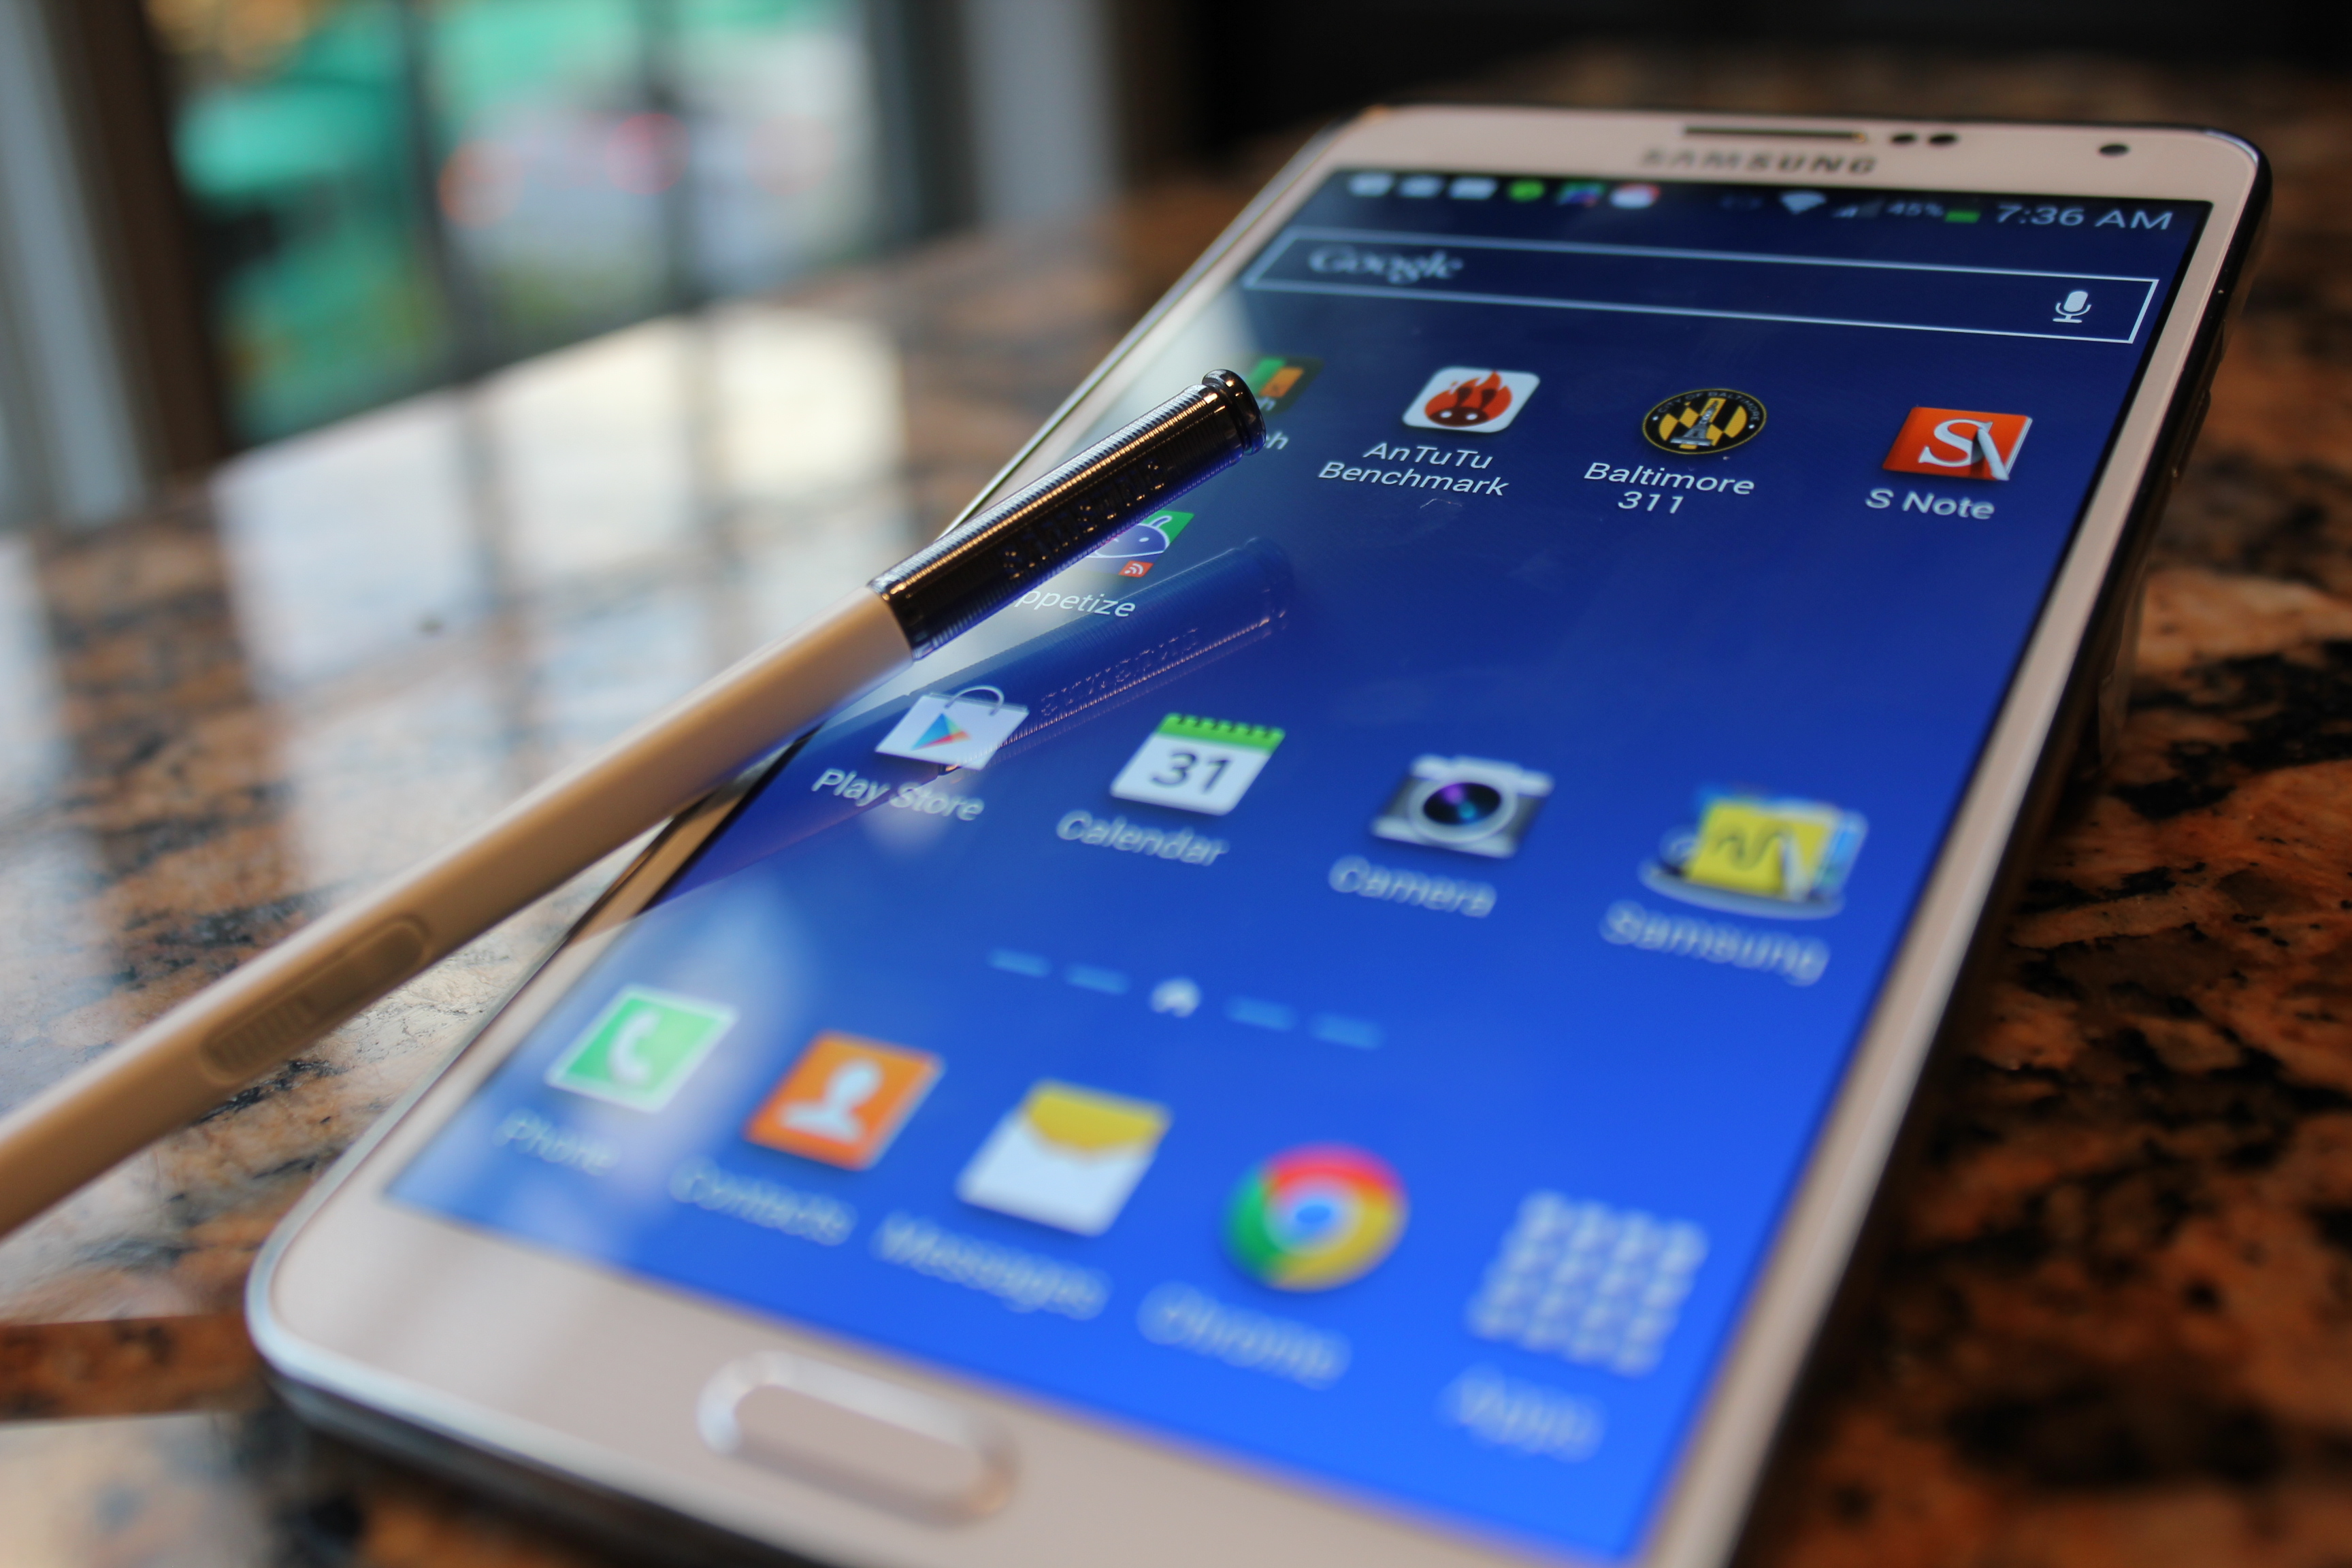 Samsung galaxy 14 андроид. Самсунг Galaxy Note 3. Samsung Galaxy s4 Note. Самсунг галакси нот 4. Samsung Galaxy Note 2013.